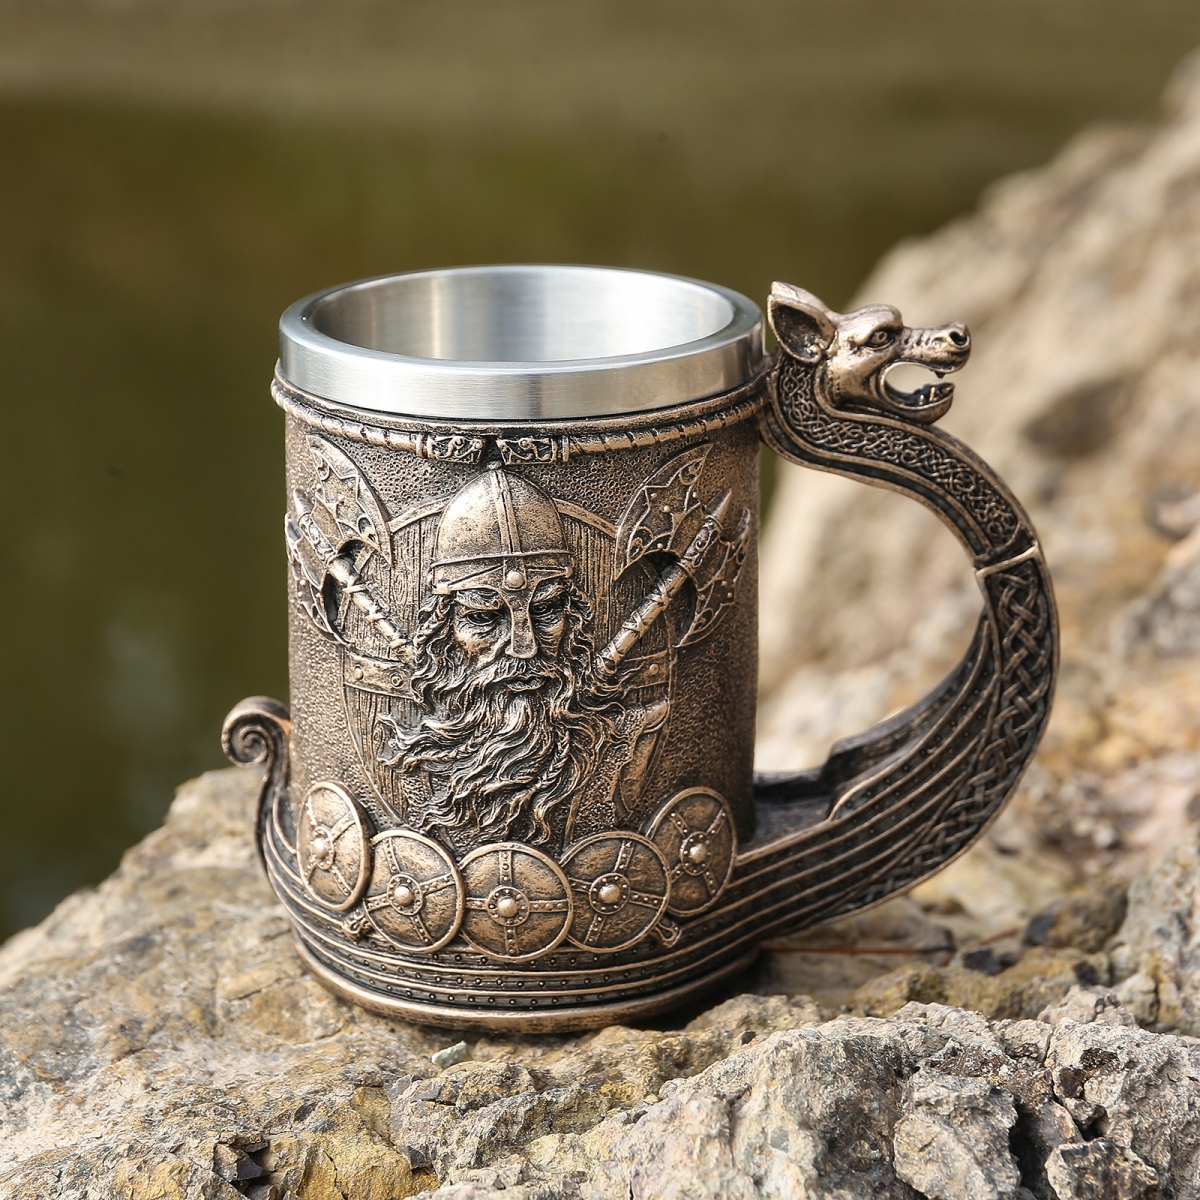 Viking dad mug on sale-NORSECOLLECTION- Viking Jewelry,Viking Necklace,Viking Bracelet,Viking Rings,Viking Mugs,Viking Accessories,Viking Crafts